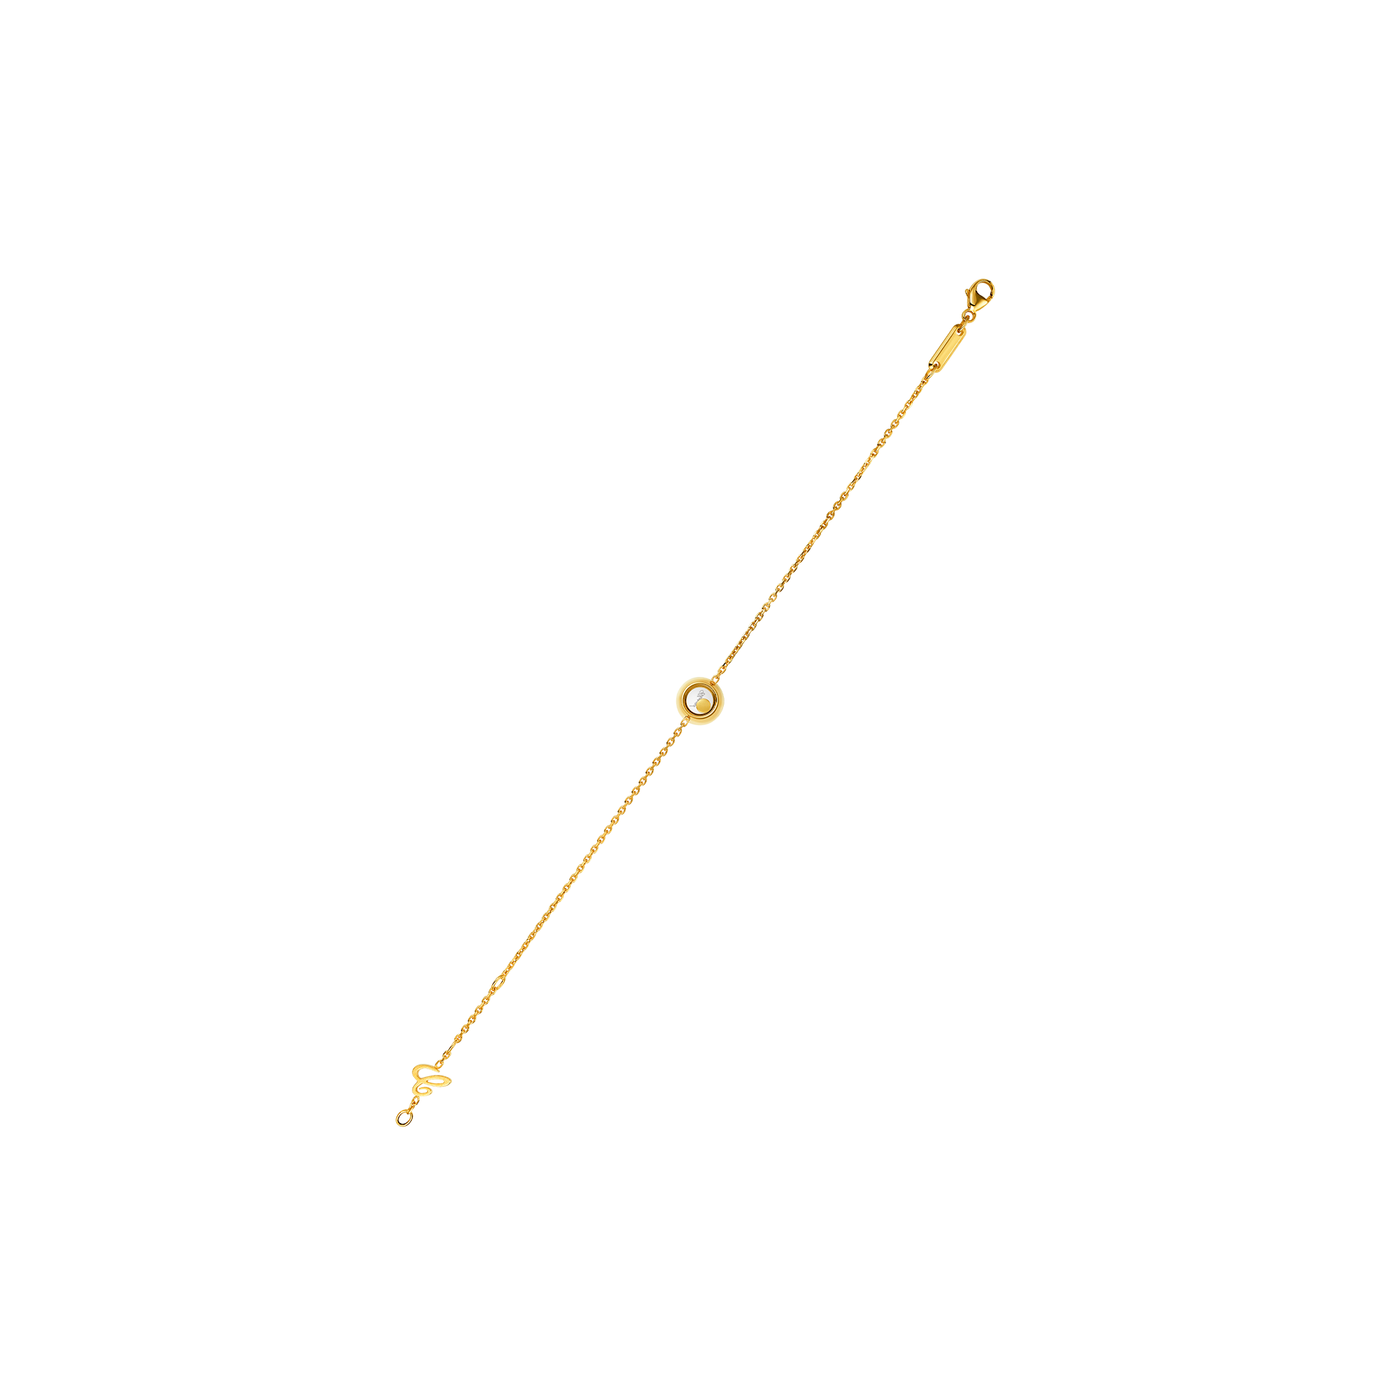 Armband für Damen von Chopard aus der Happy Diamonds-Kollektion mit der Referenz 85A017-0001 aus Gelbgold mit einem Diamant bei Juwelier Krebber